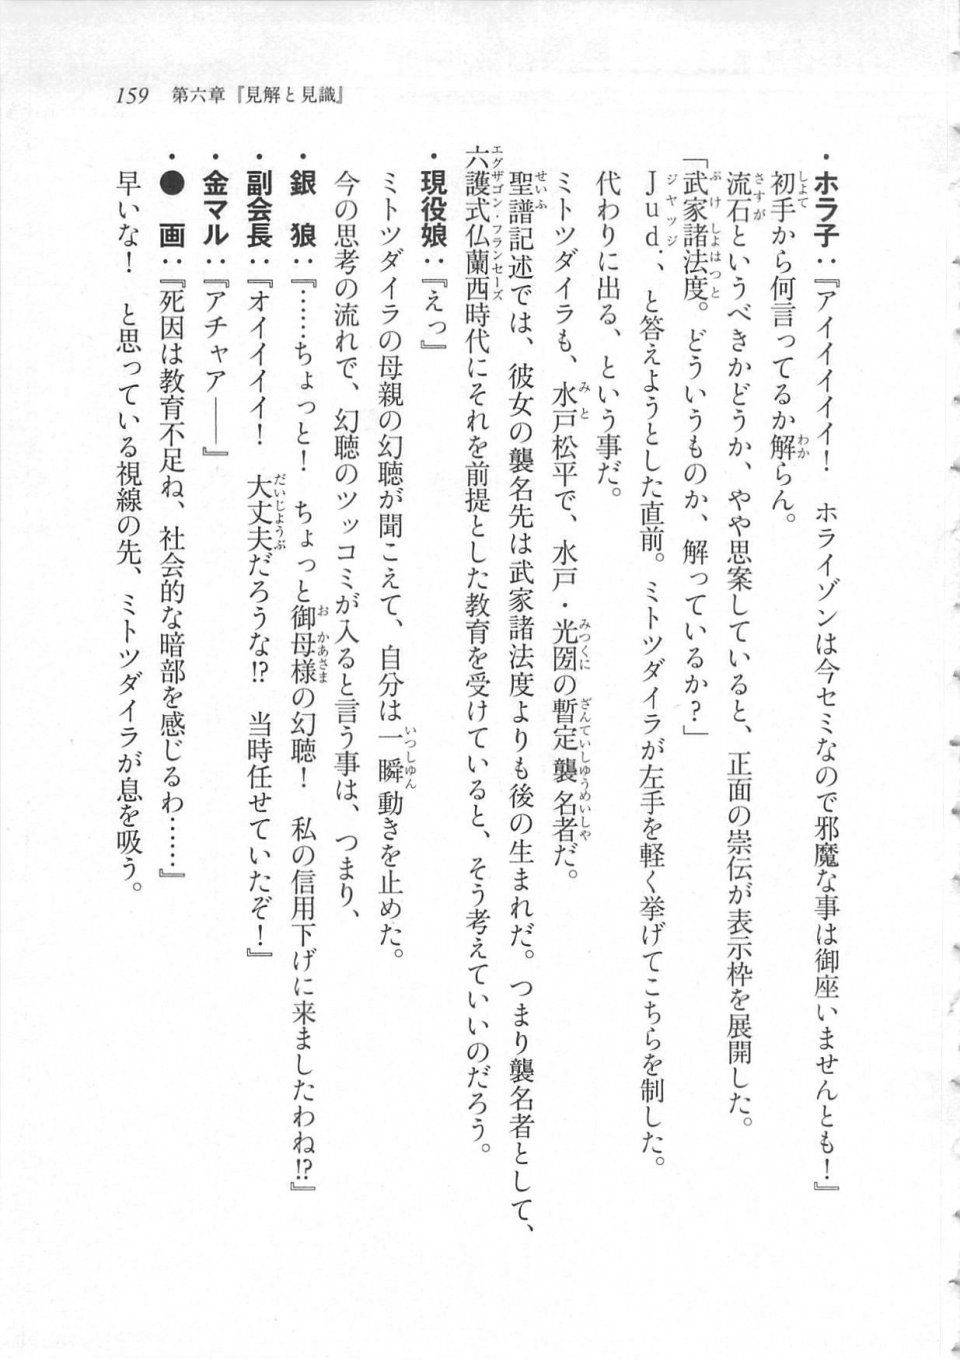 Kyoukai Senjou no Horizon LN Sidestory Vol 3 - Photo #163